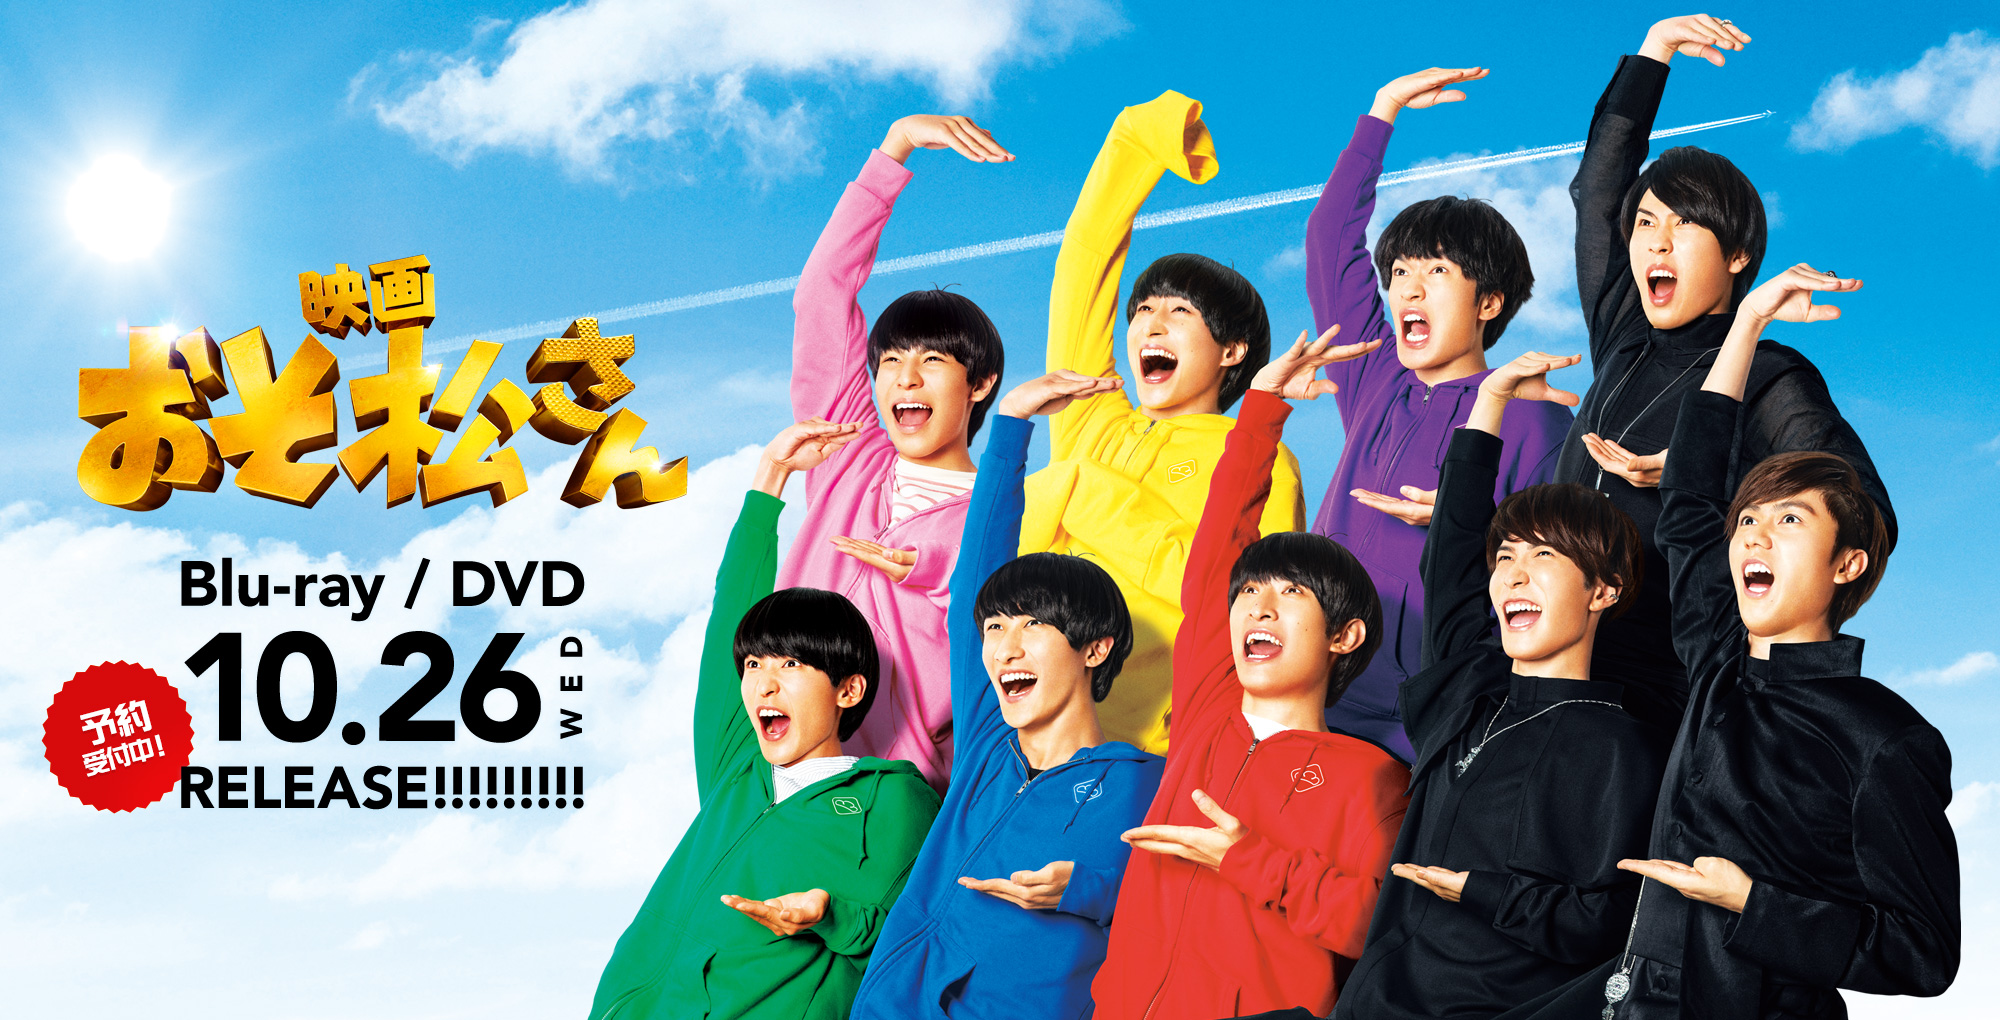 映画おそ松さん Blue-ray / DVD 10.26WED RELEASE!!!!!!!!! 予約受付中!